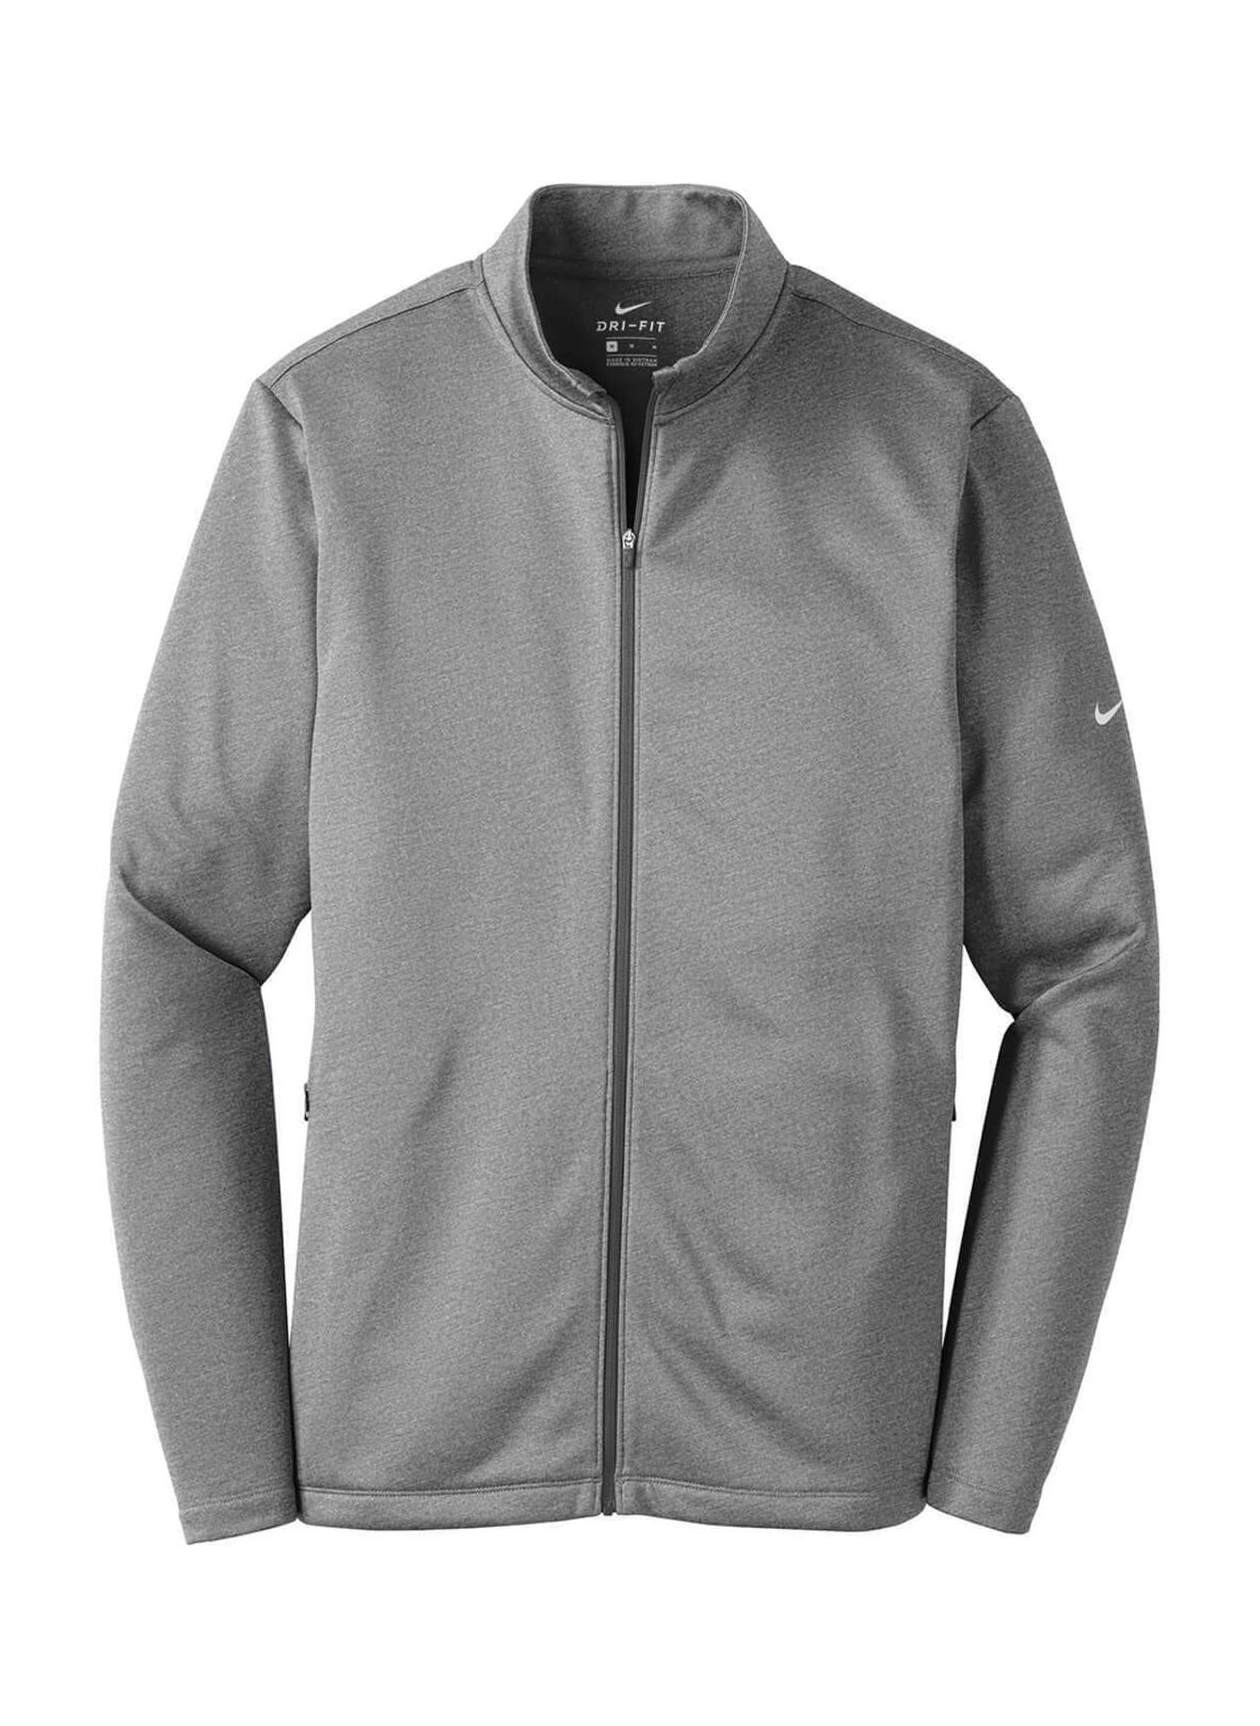 Nike Men's Dark Grey Heather Therma-FIT Fleece Jacket